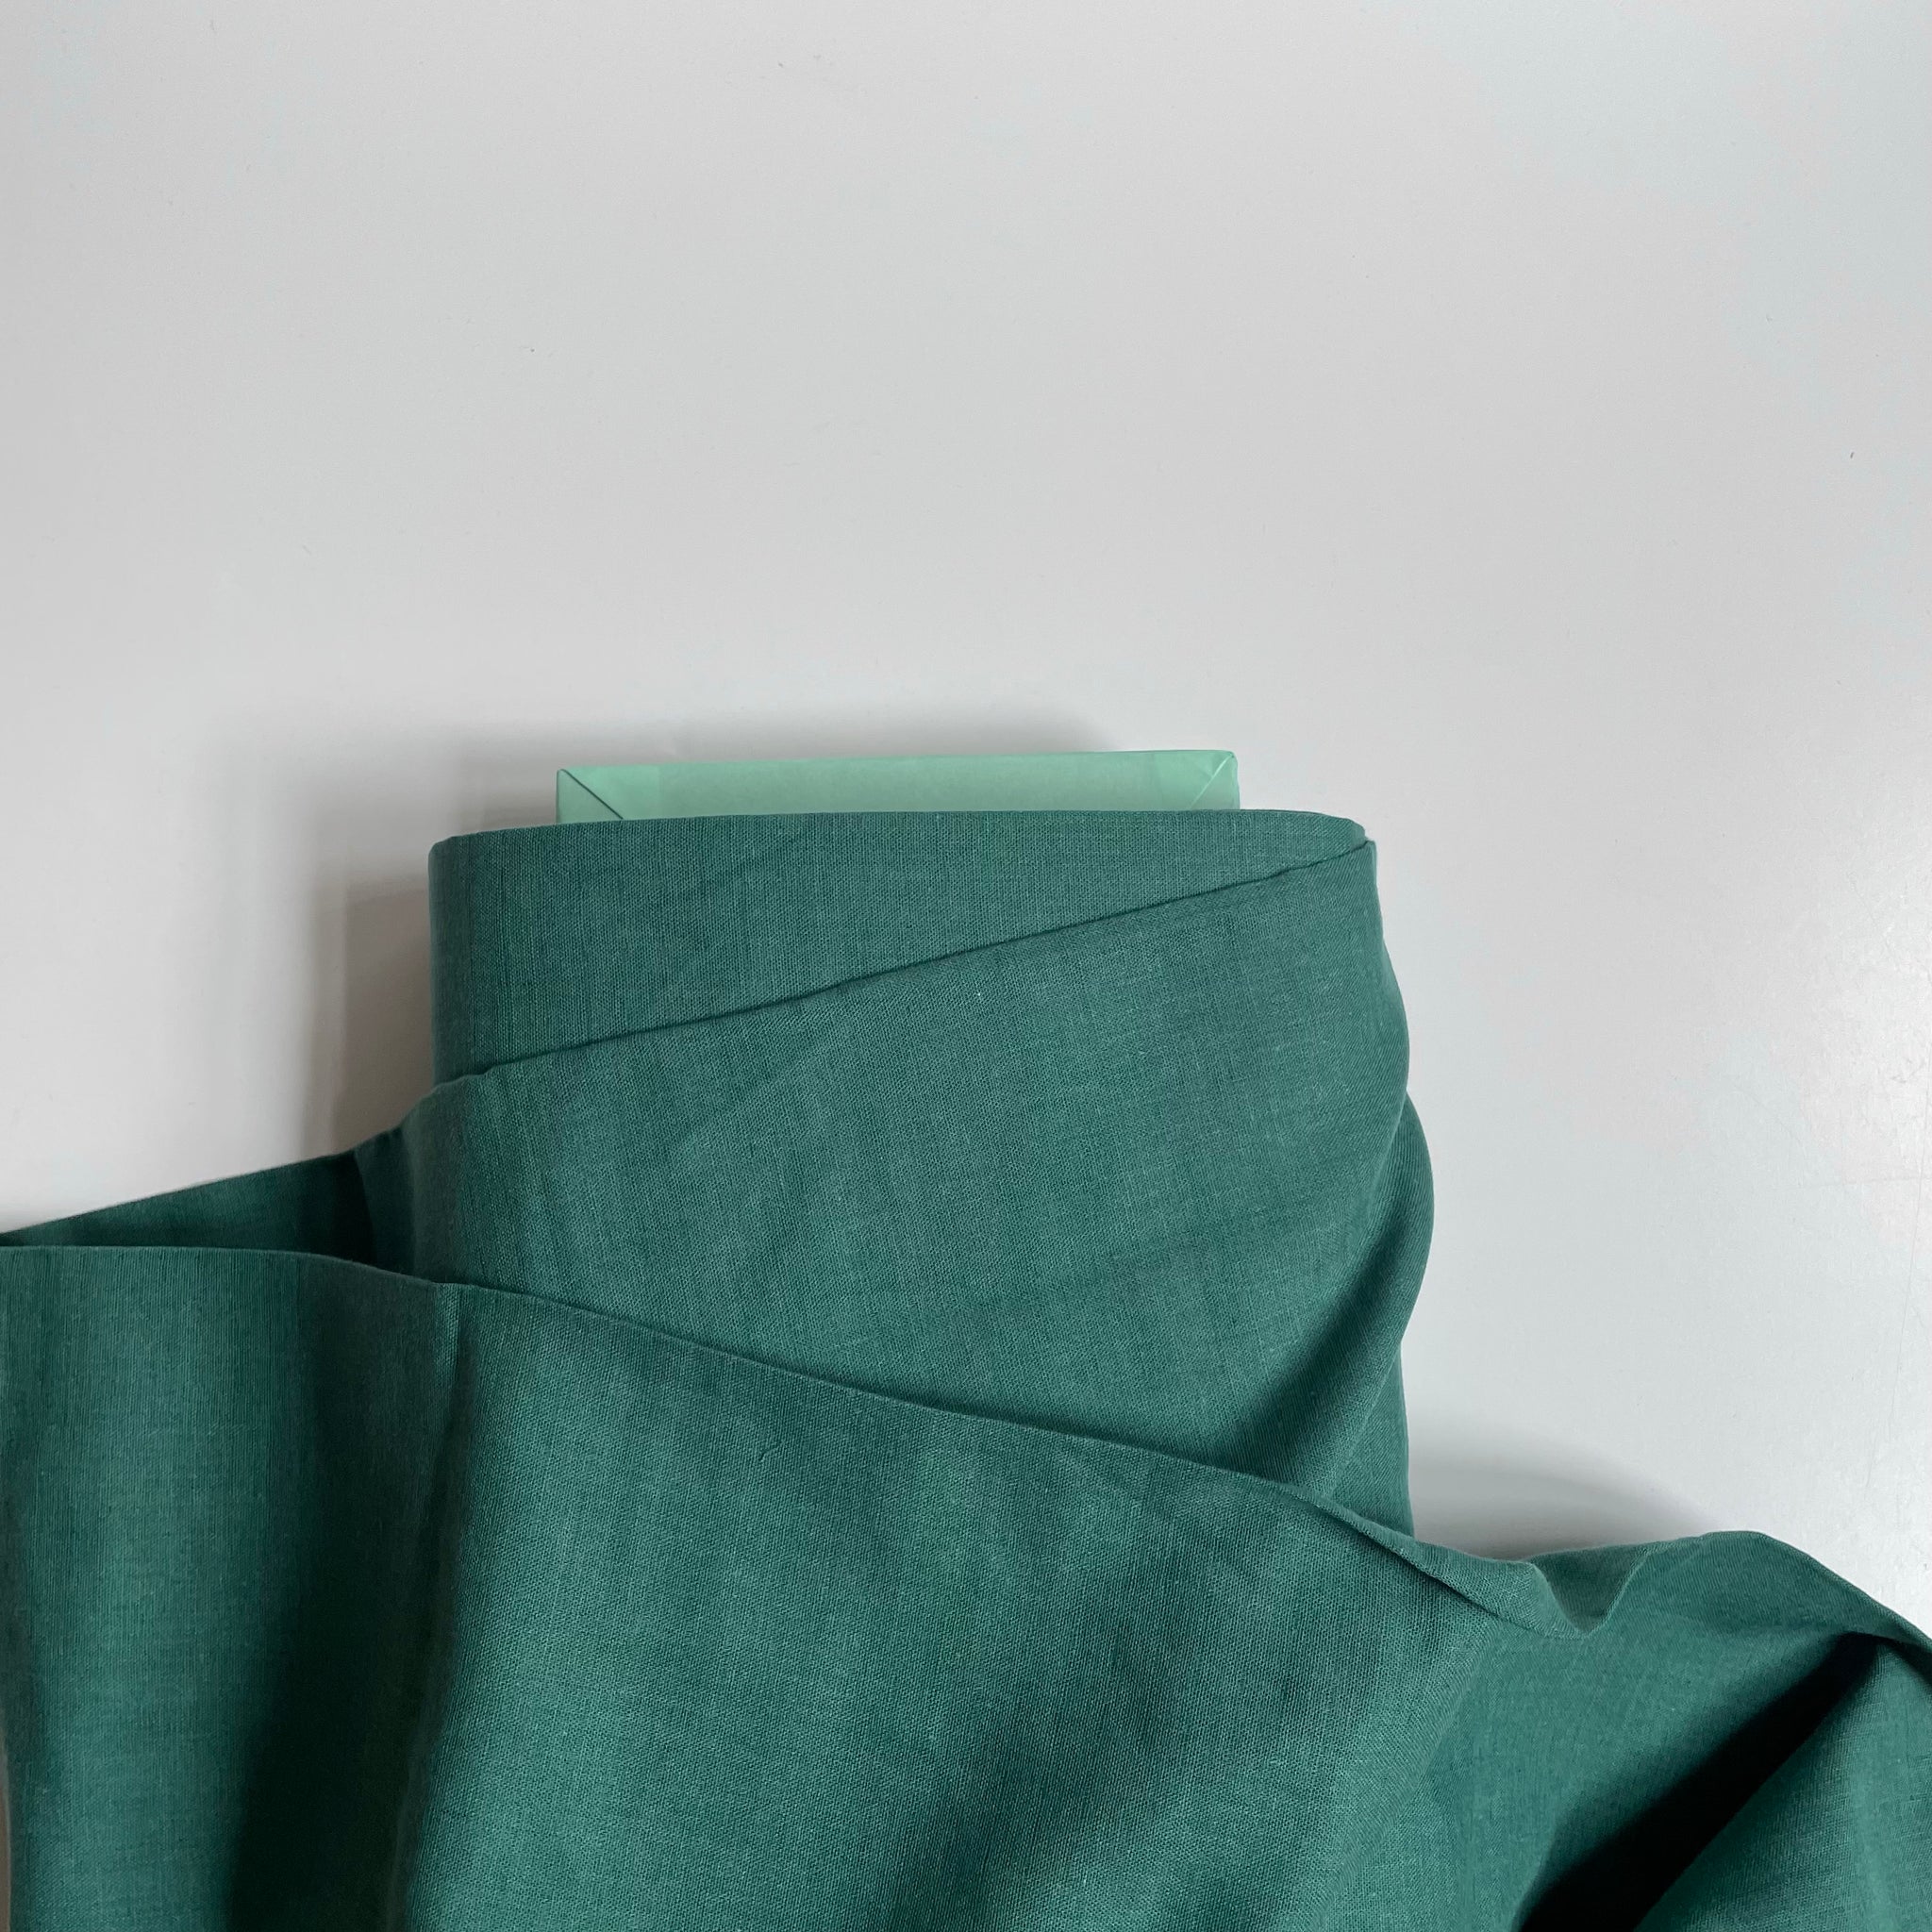 Kokka Cotton / Rayon Double Gauze - Emerald